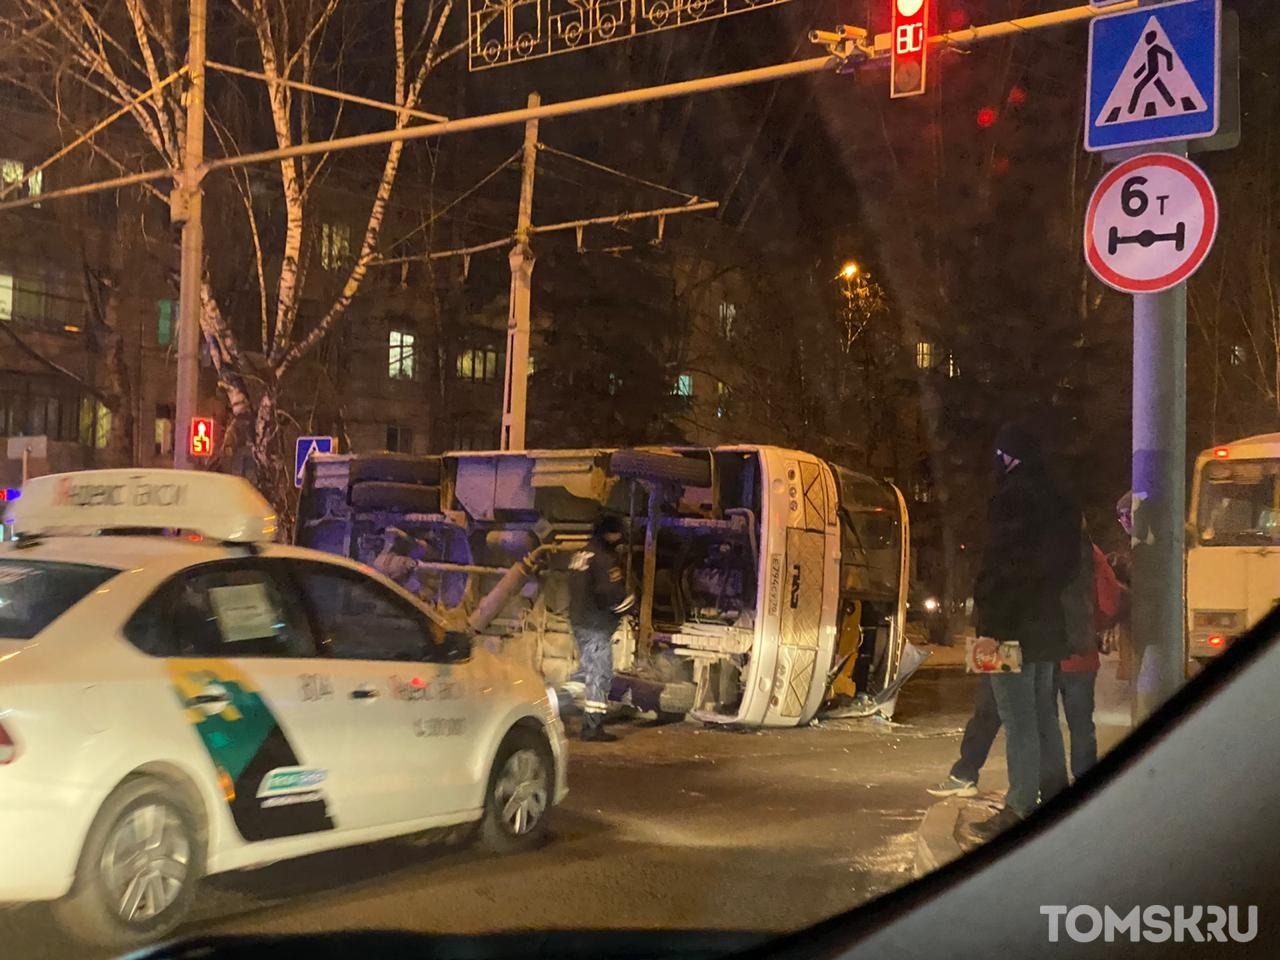 Маршрутный автобус перевернулся на проспекте Кирова в Томске